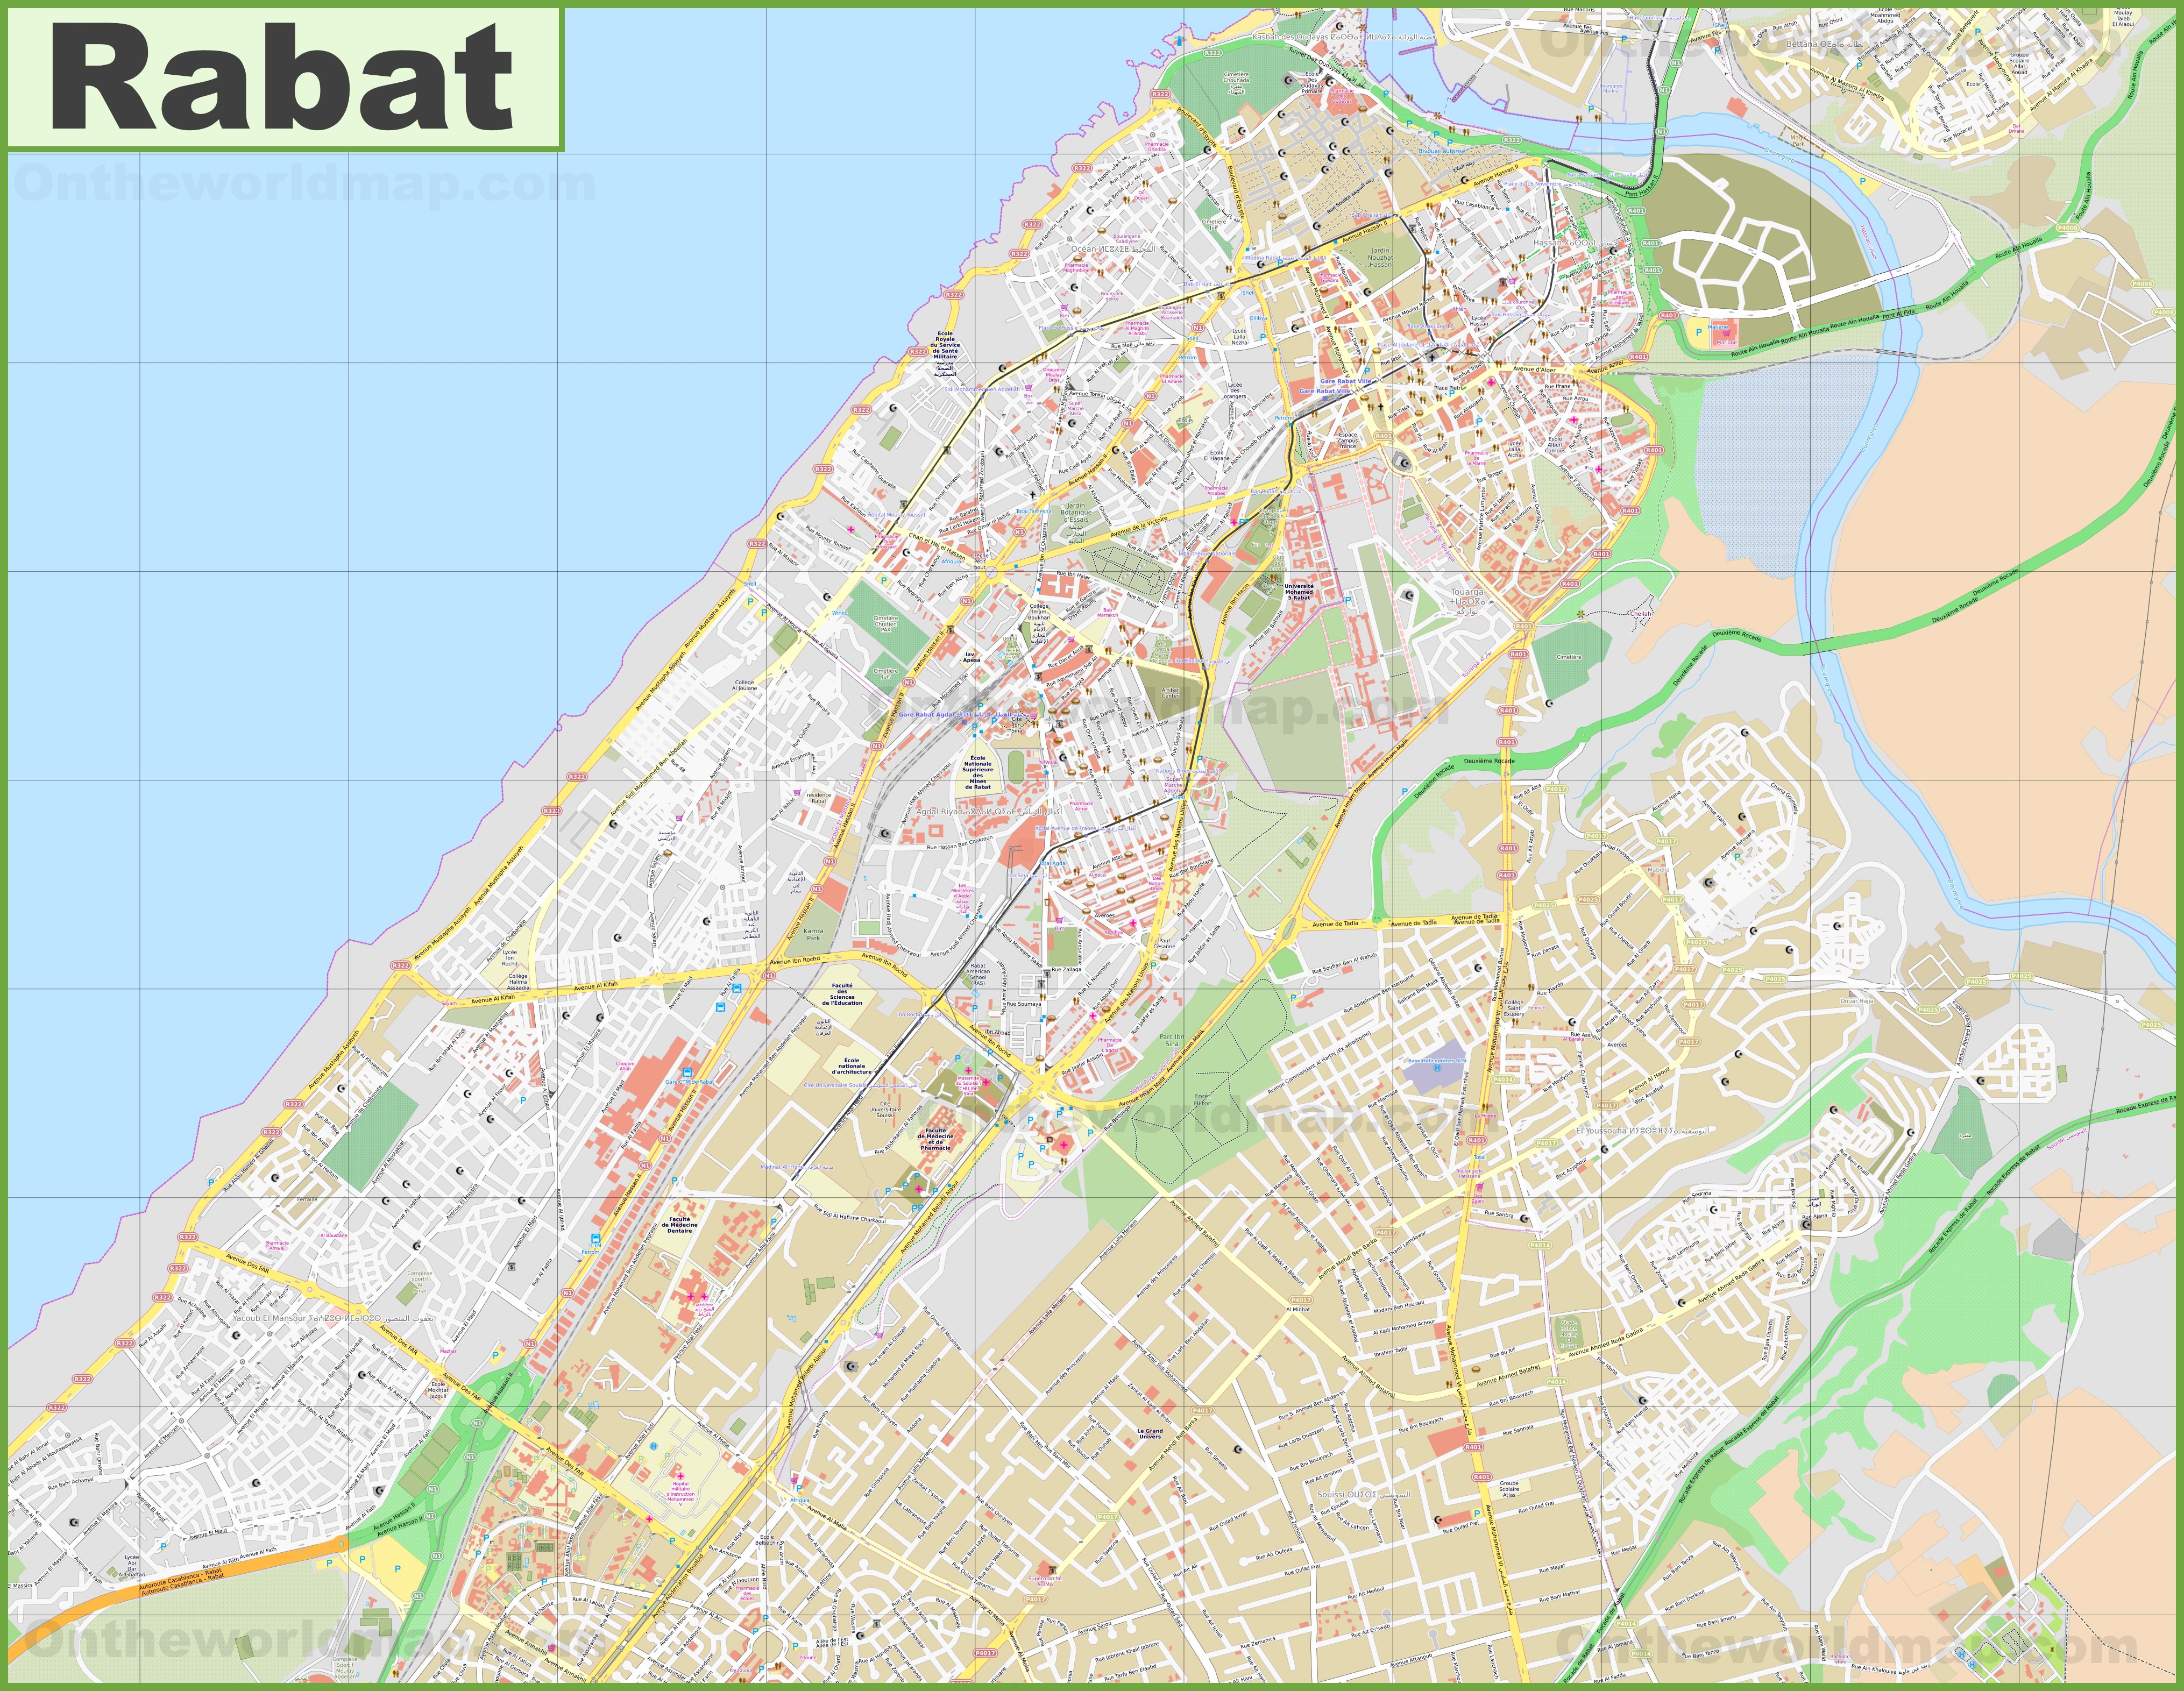 detailed-map-of-rabat.jpg